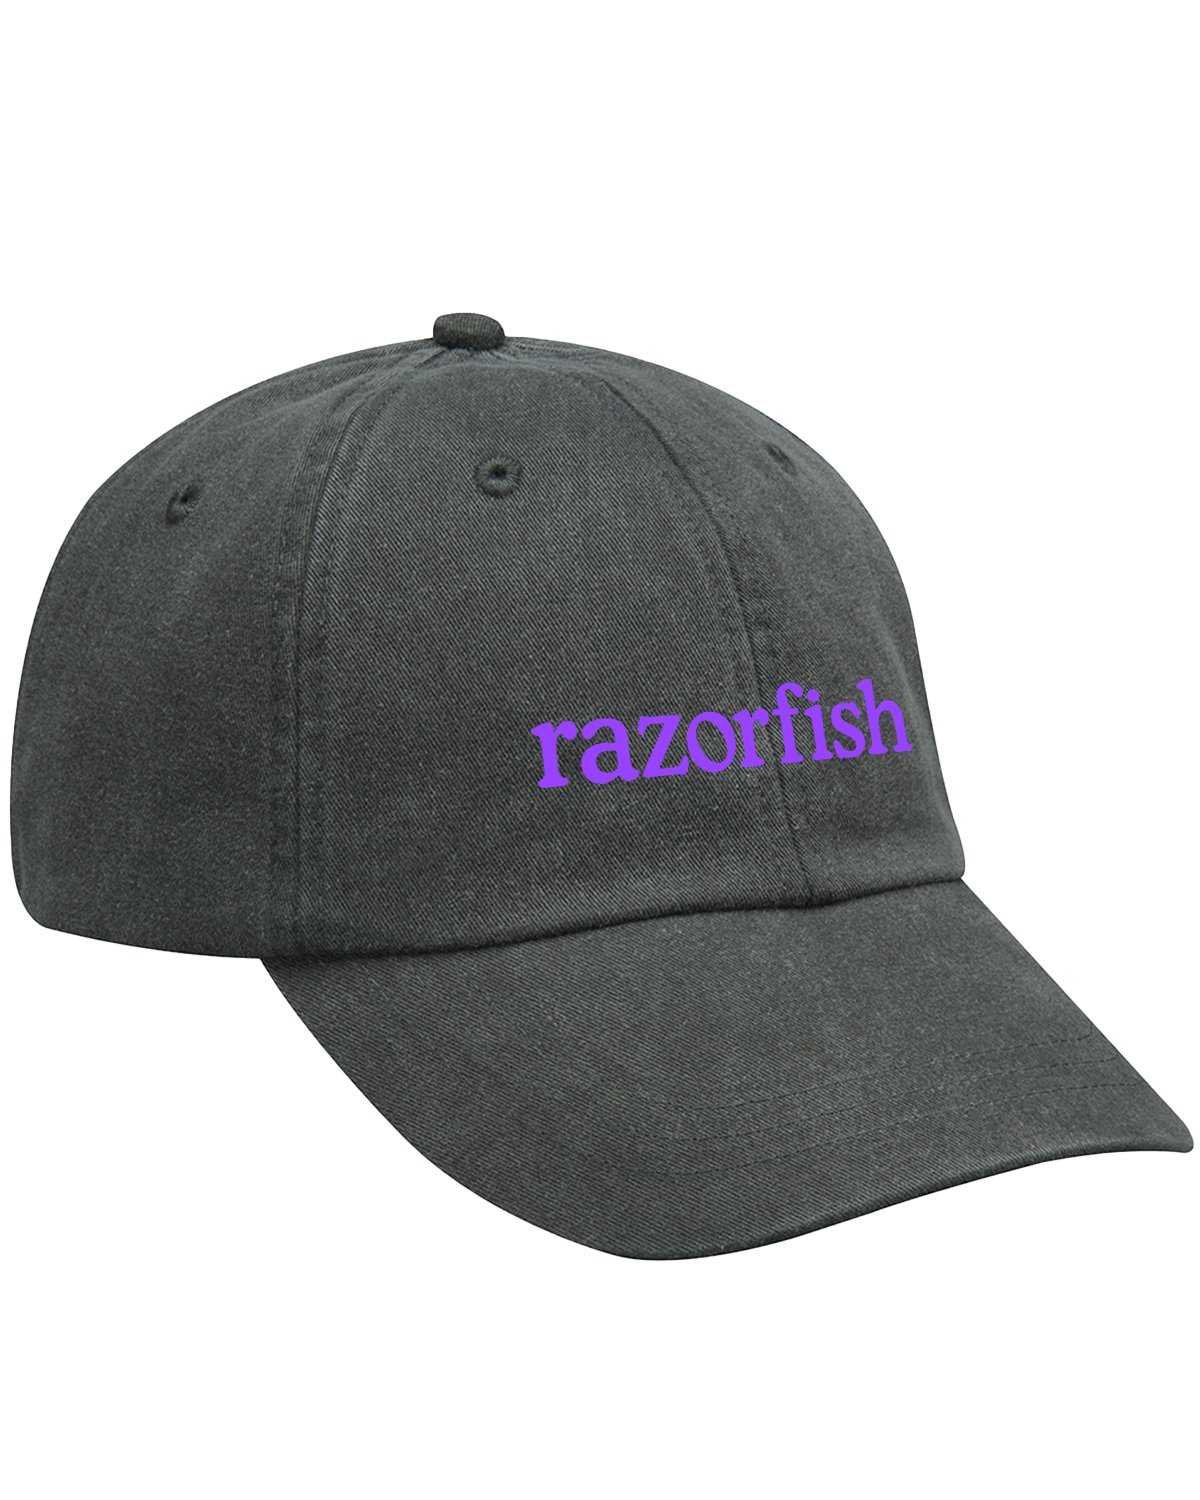 Razor Fish Cap - Sample